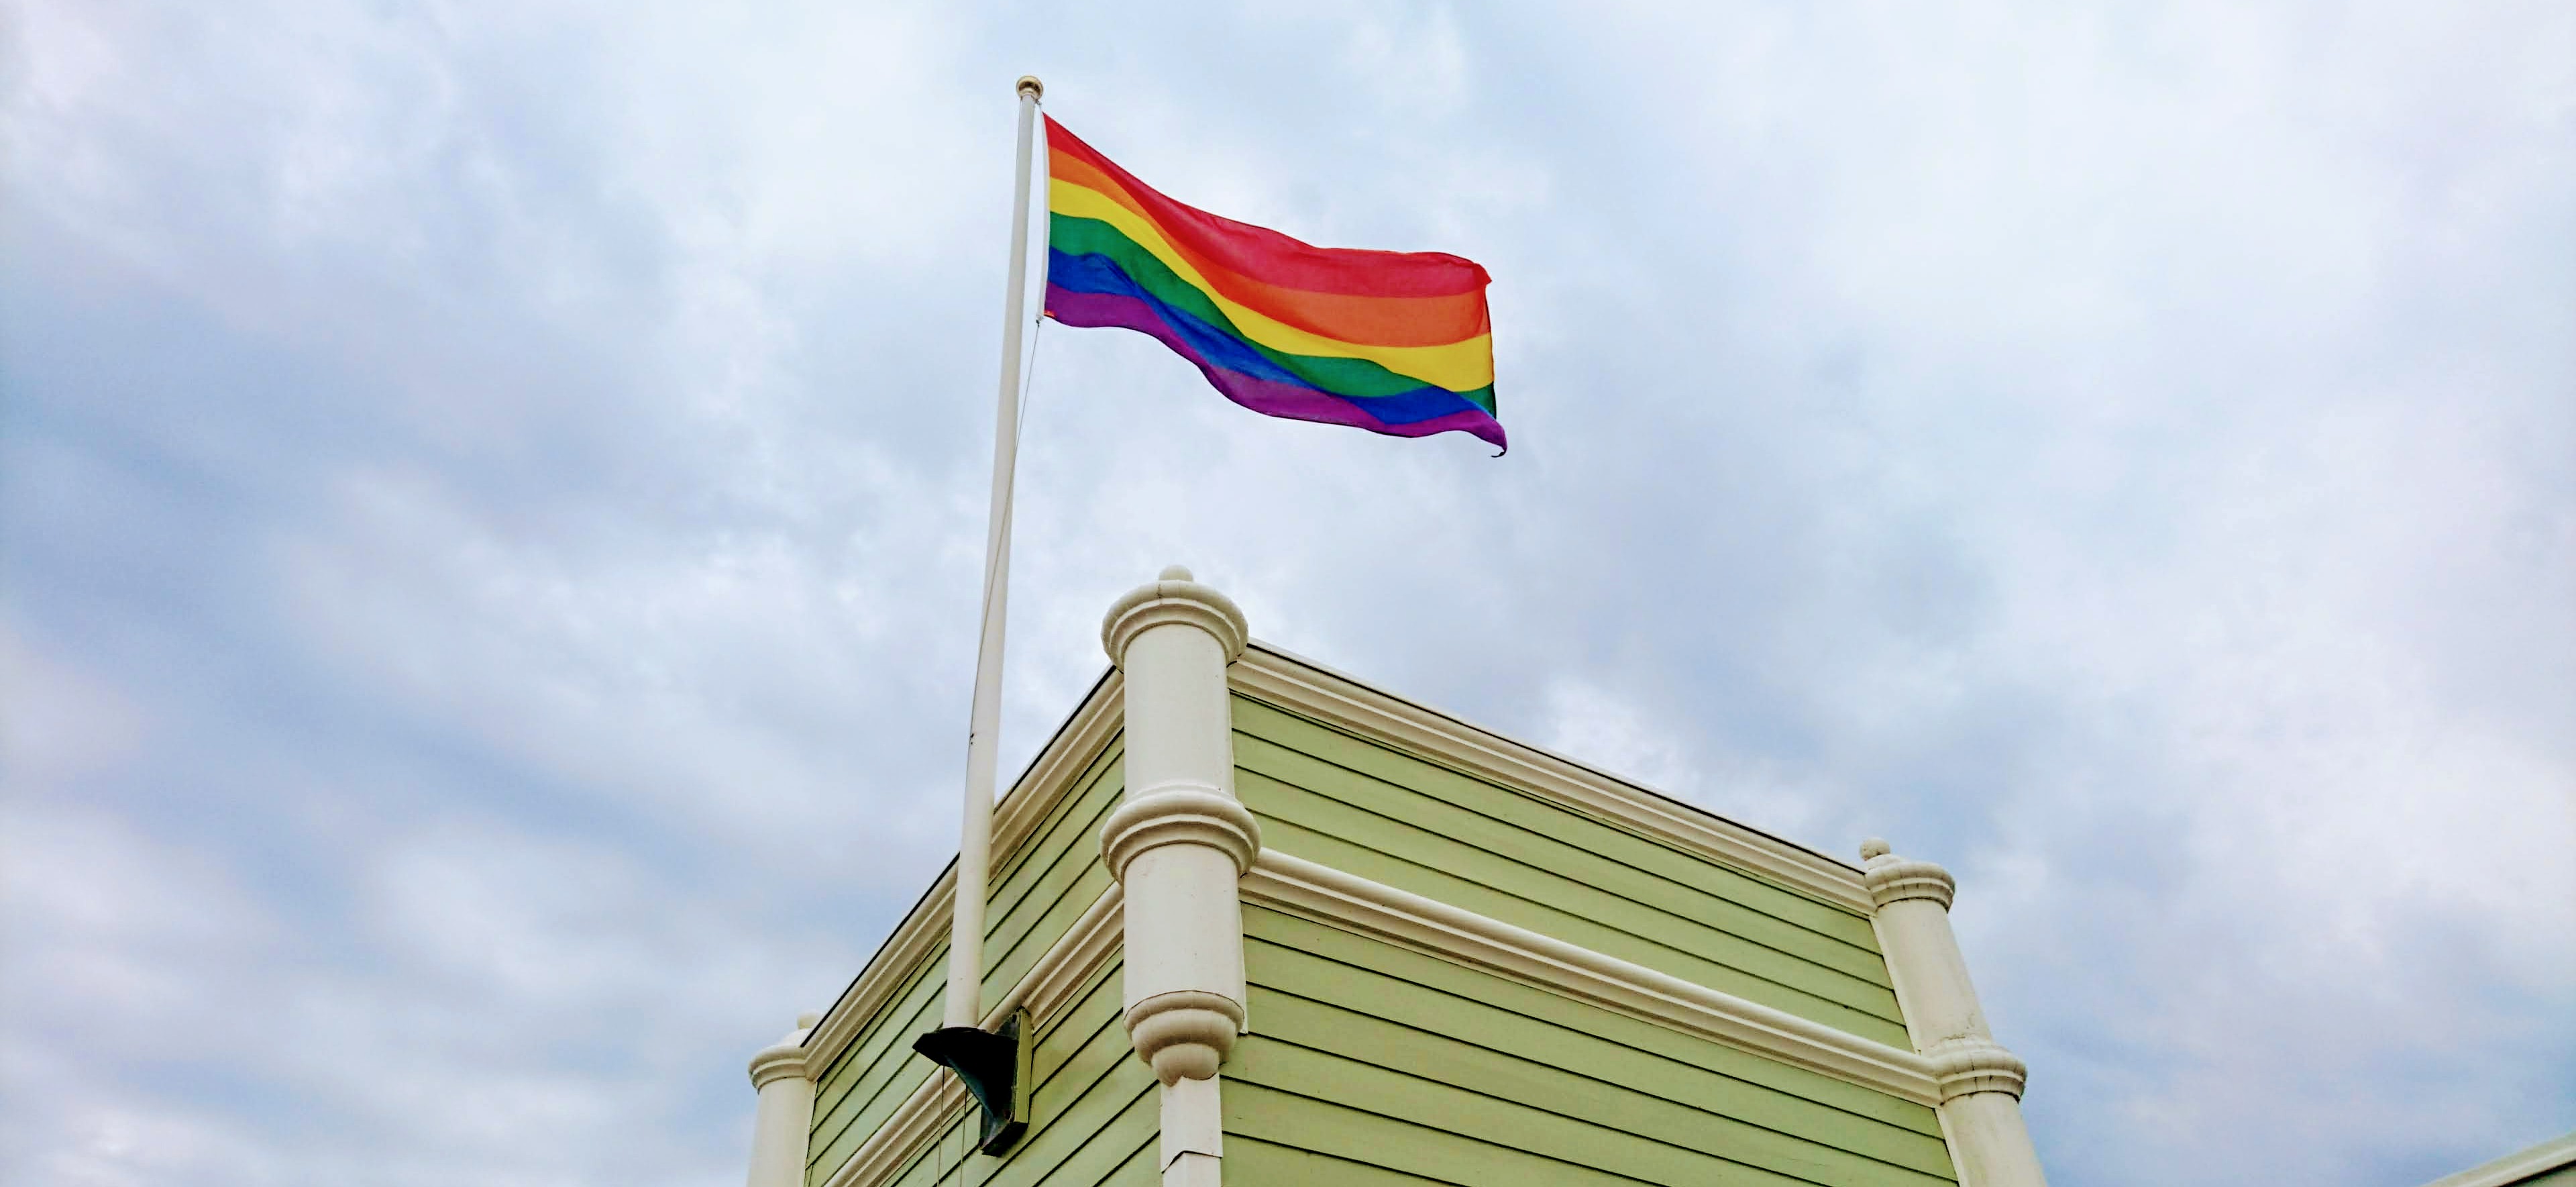 Regnbågsflaggan vajar överRibersborgs kallbadhus under Queer-dagen, som inträffar första måndagen varje månad under 2018